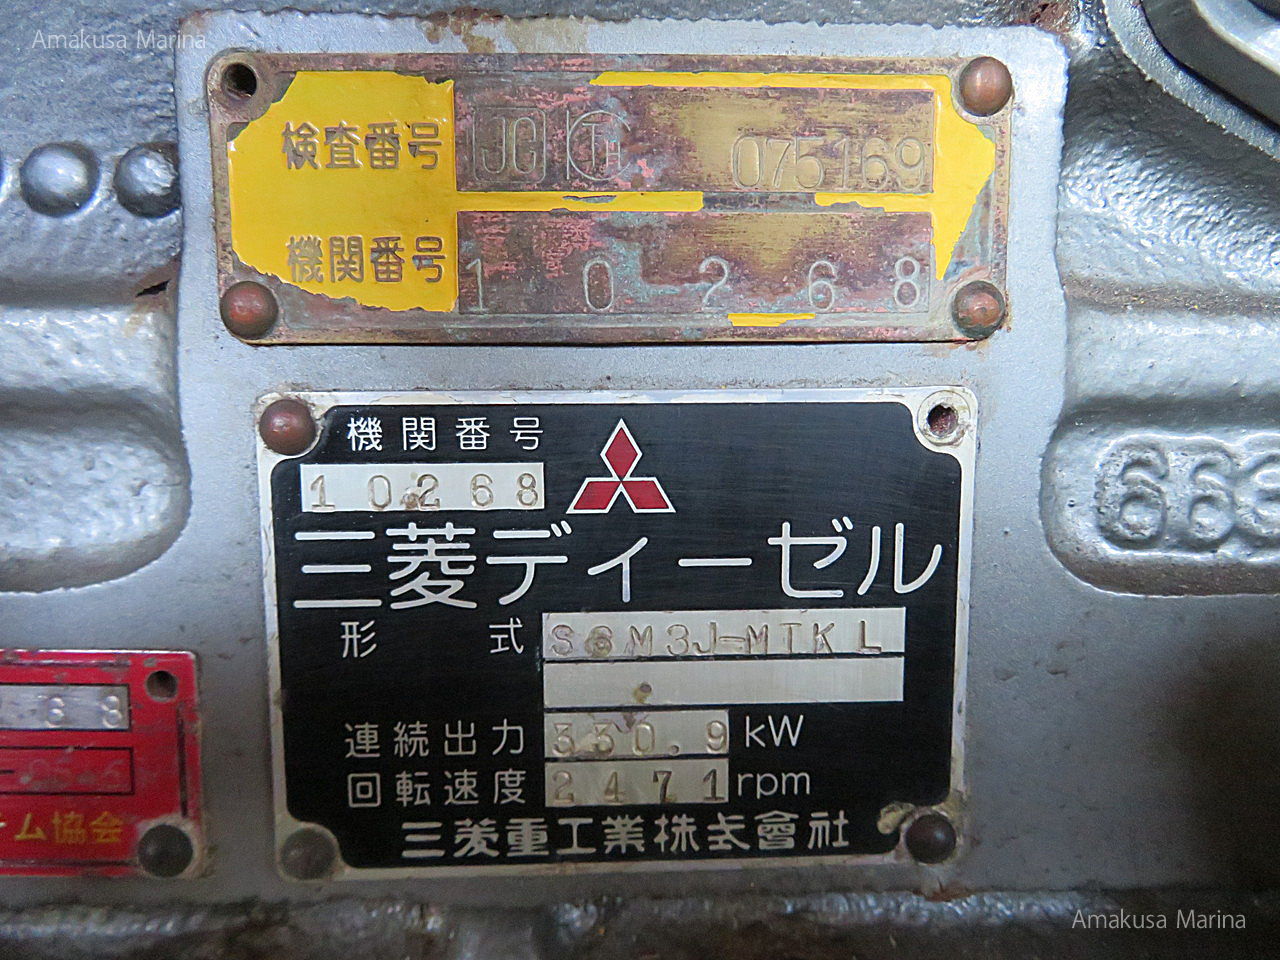 三菱 S6M3J-MTKL 495ps(2.96) | 株式会社あまくさマリーナ